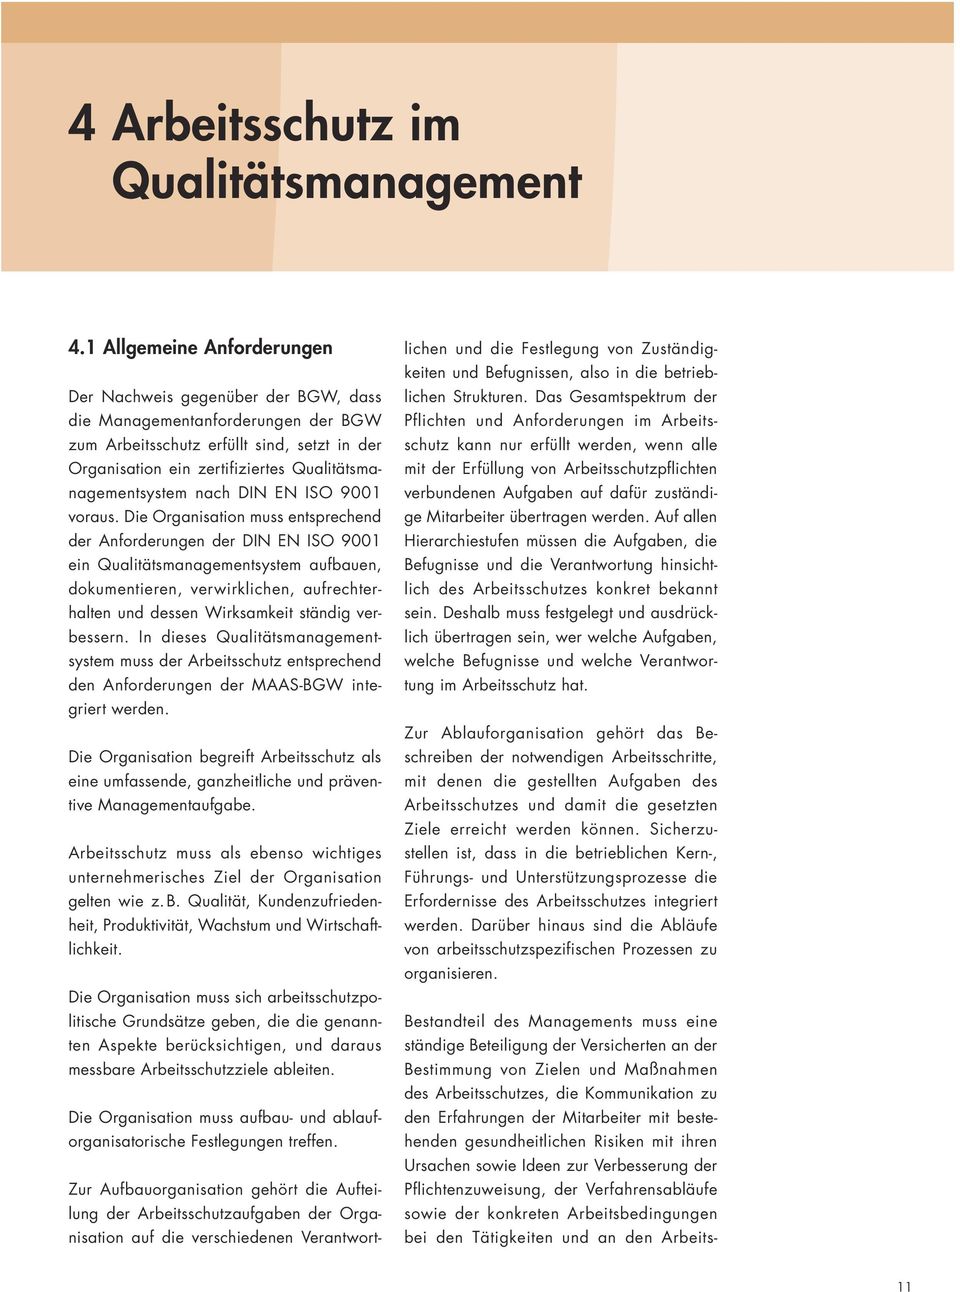 Qualitätsmanagementsystem nach DIN EN ISO 9001 voraus.